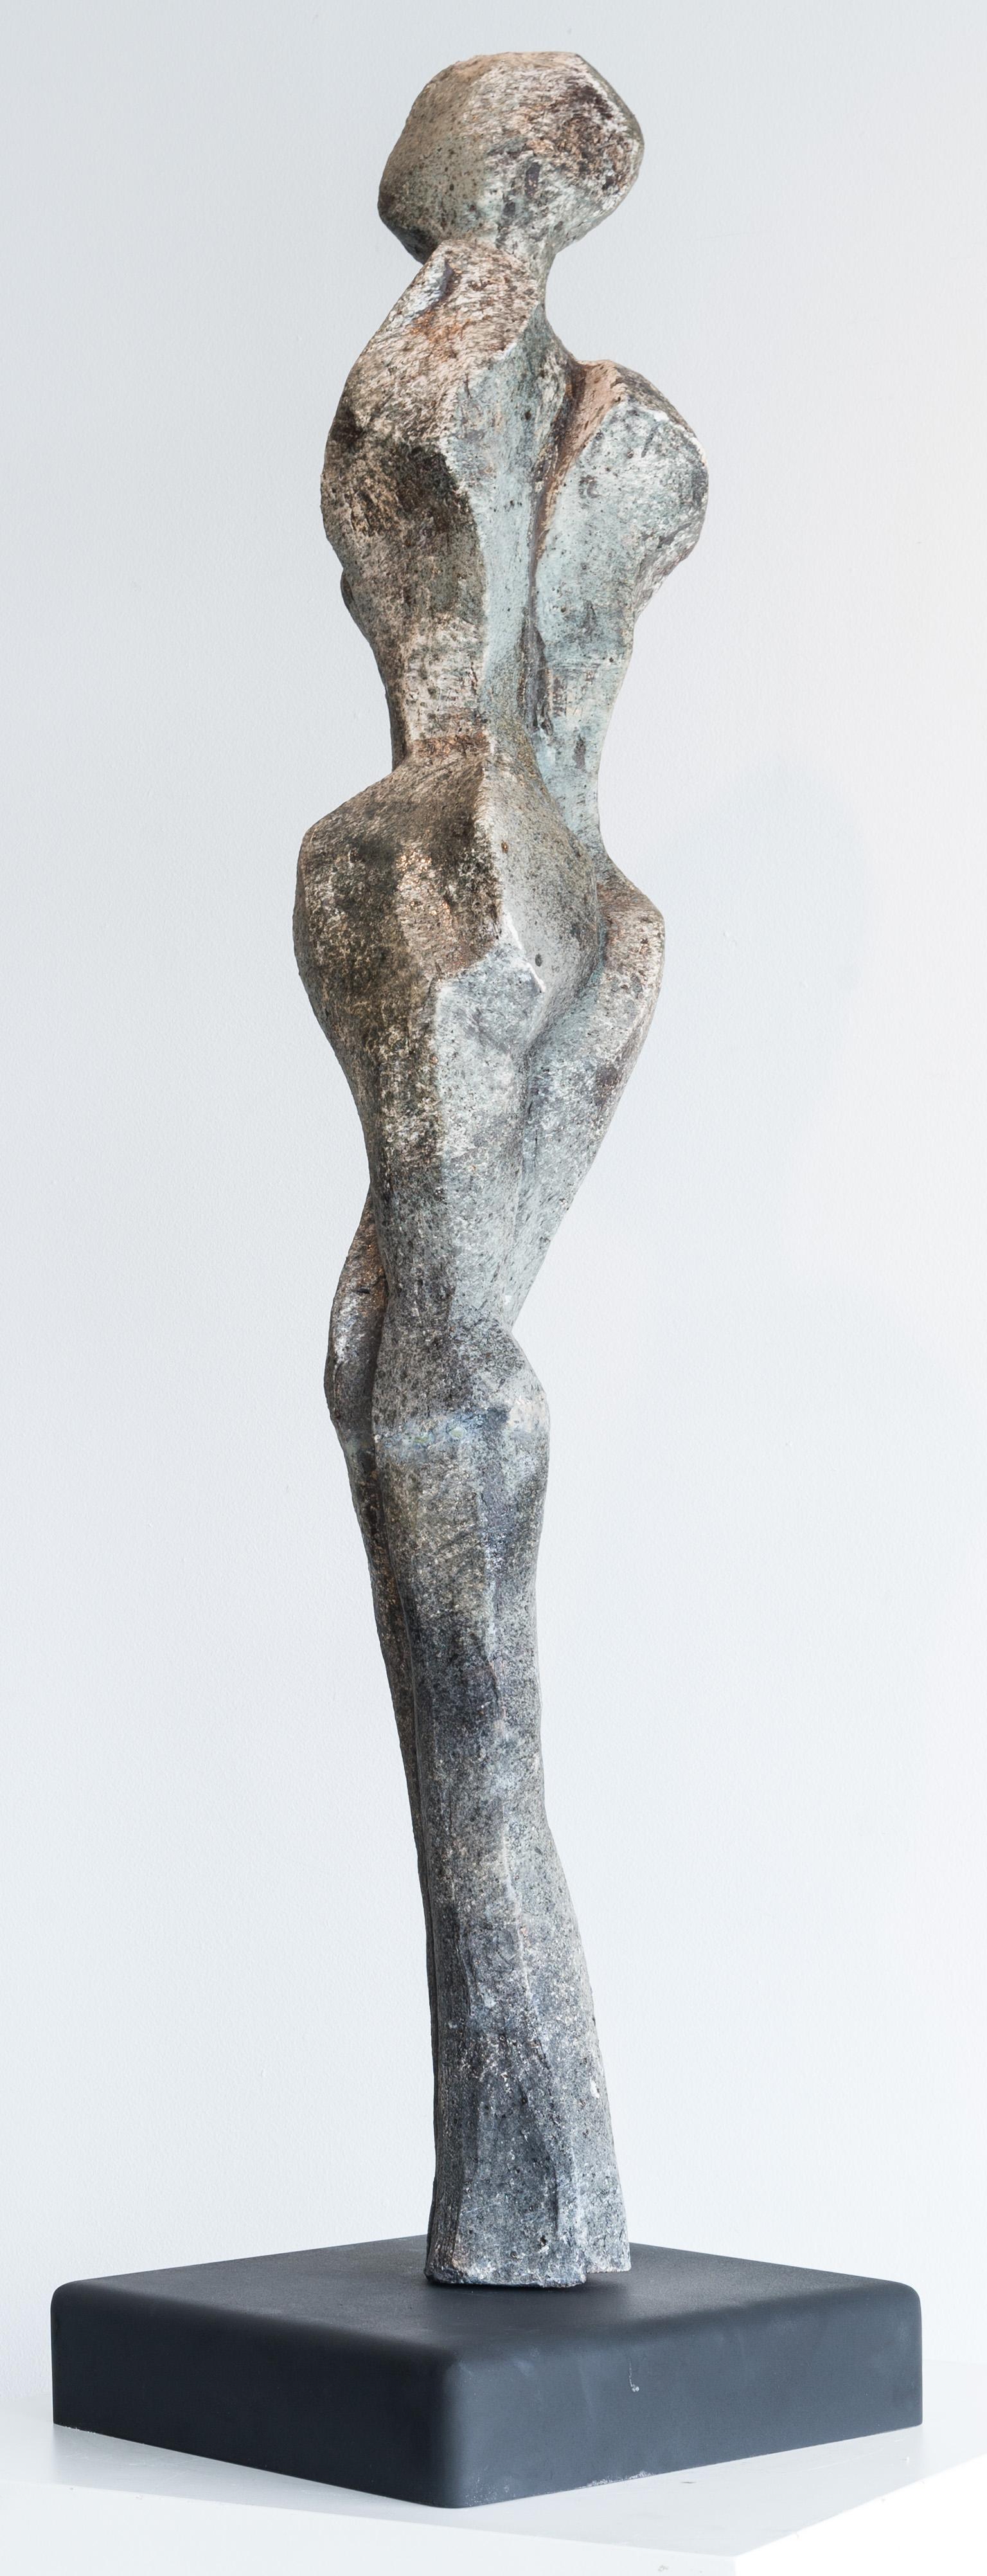 Grandeur - Contemporary Sculpture by Sheila Ganch